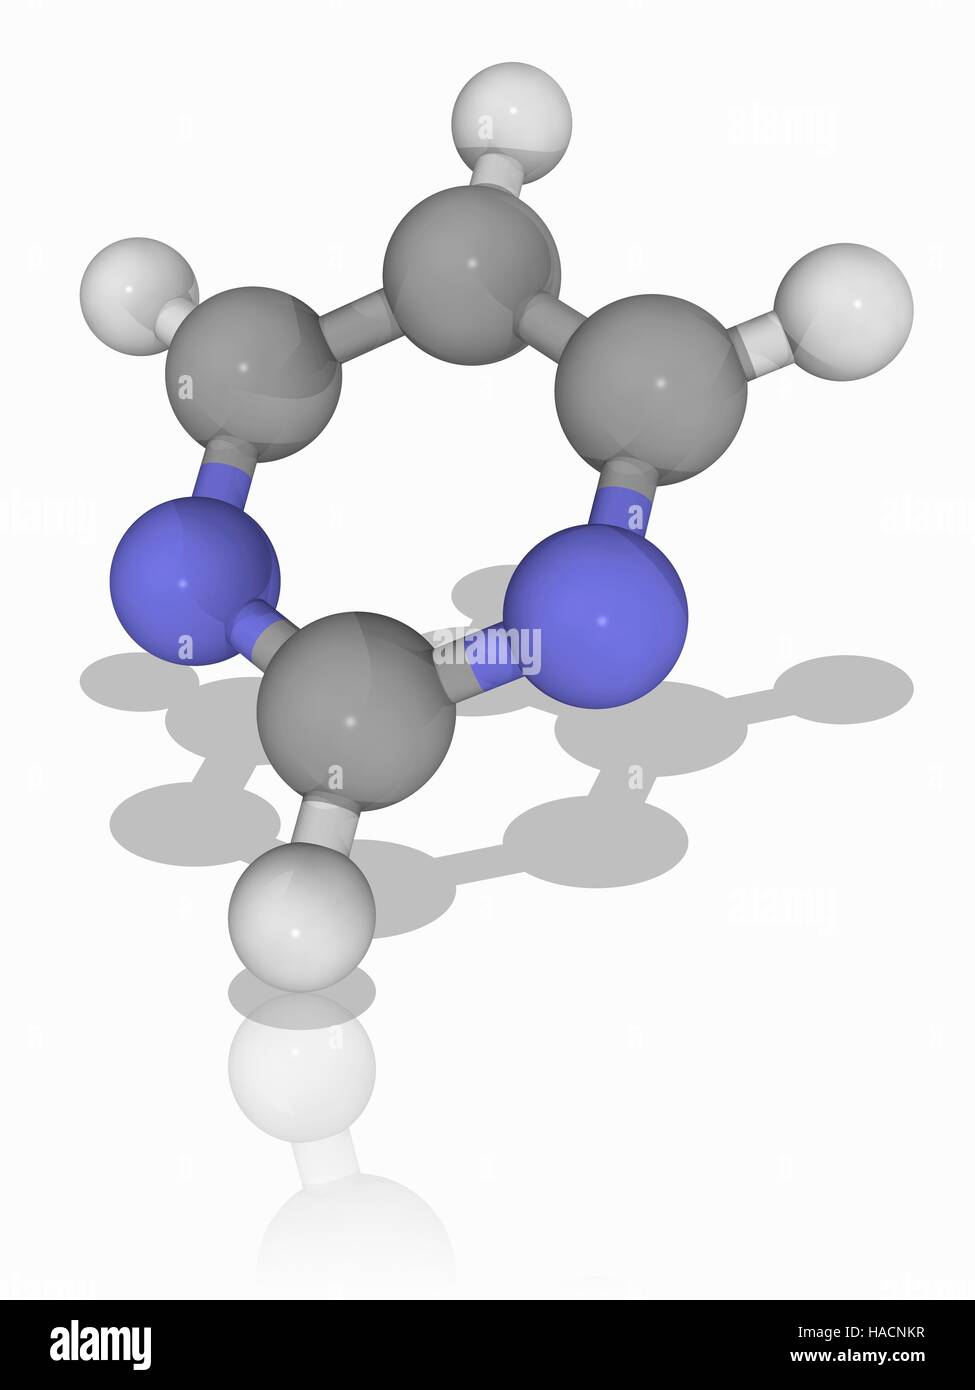 Pyrimidine. Modelo molecular de los compuestos orgánicos aromáticos  pyrimidine (). Los átomos de nitrógeno se encuentran en las  posiciones 1 y 3 en el anillo aromático, de ahí los nombres sistemáticos de